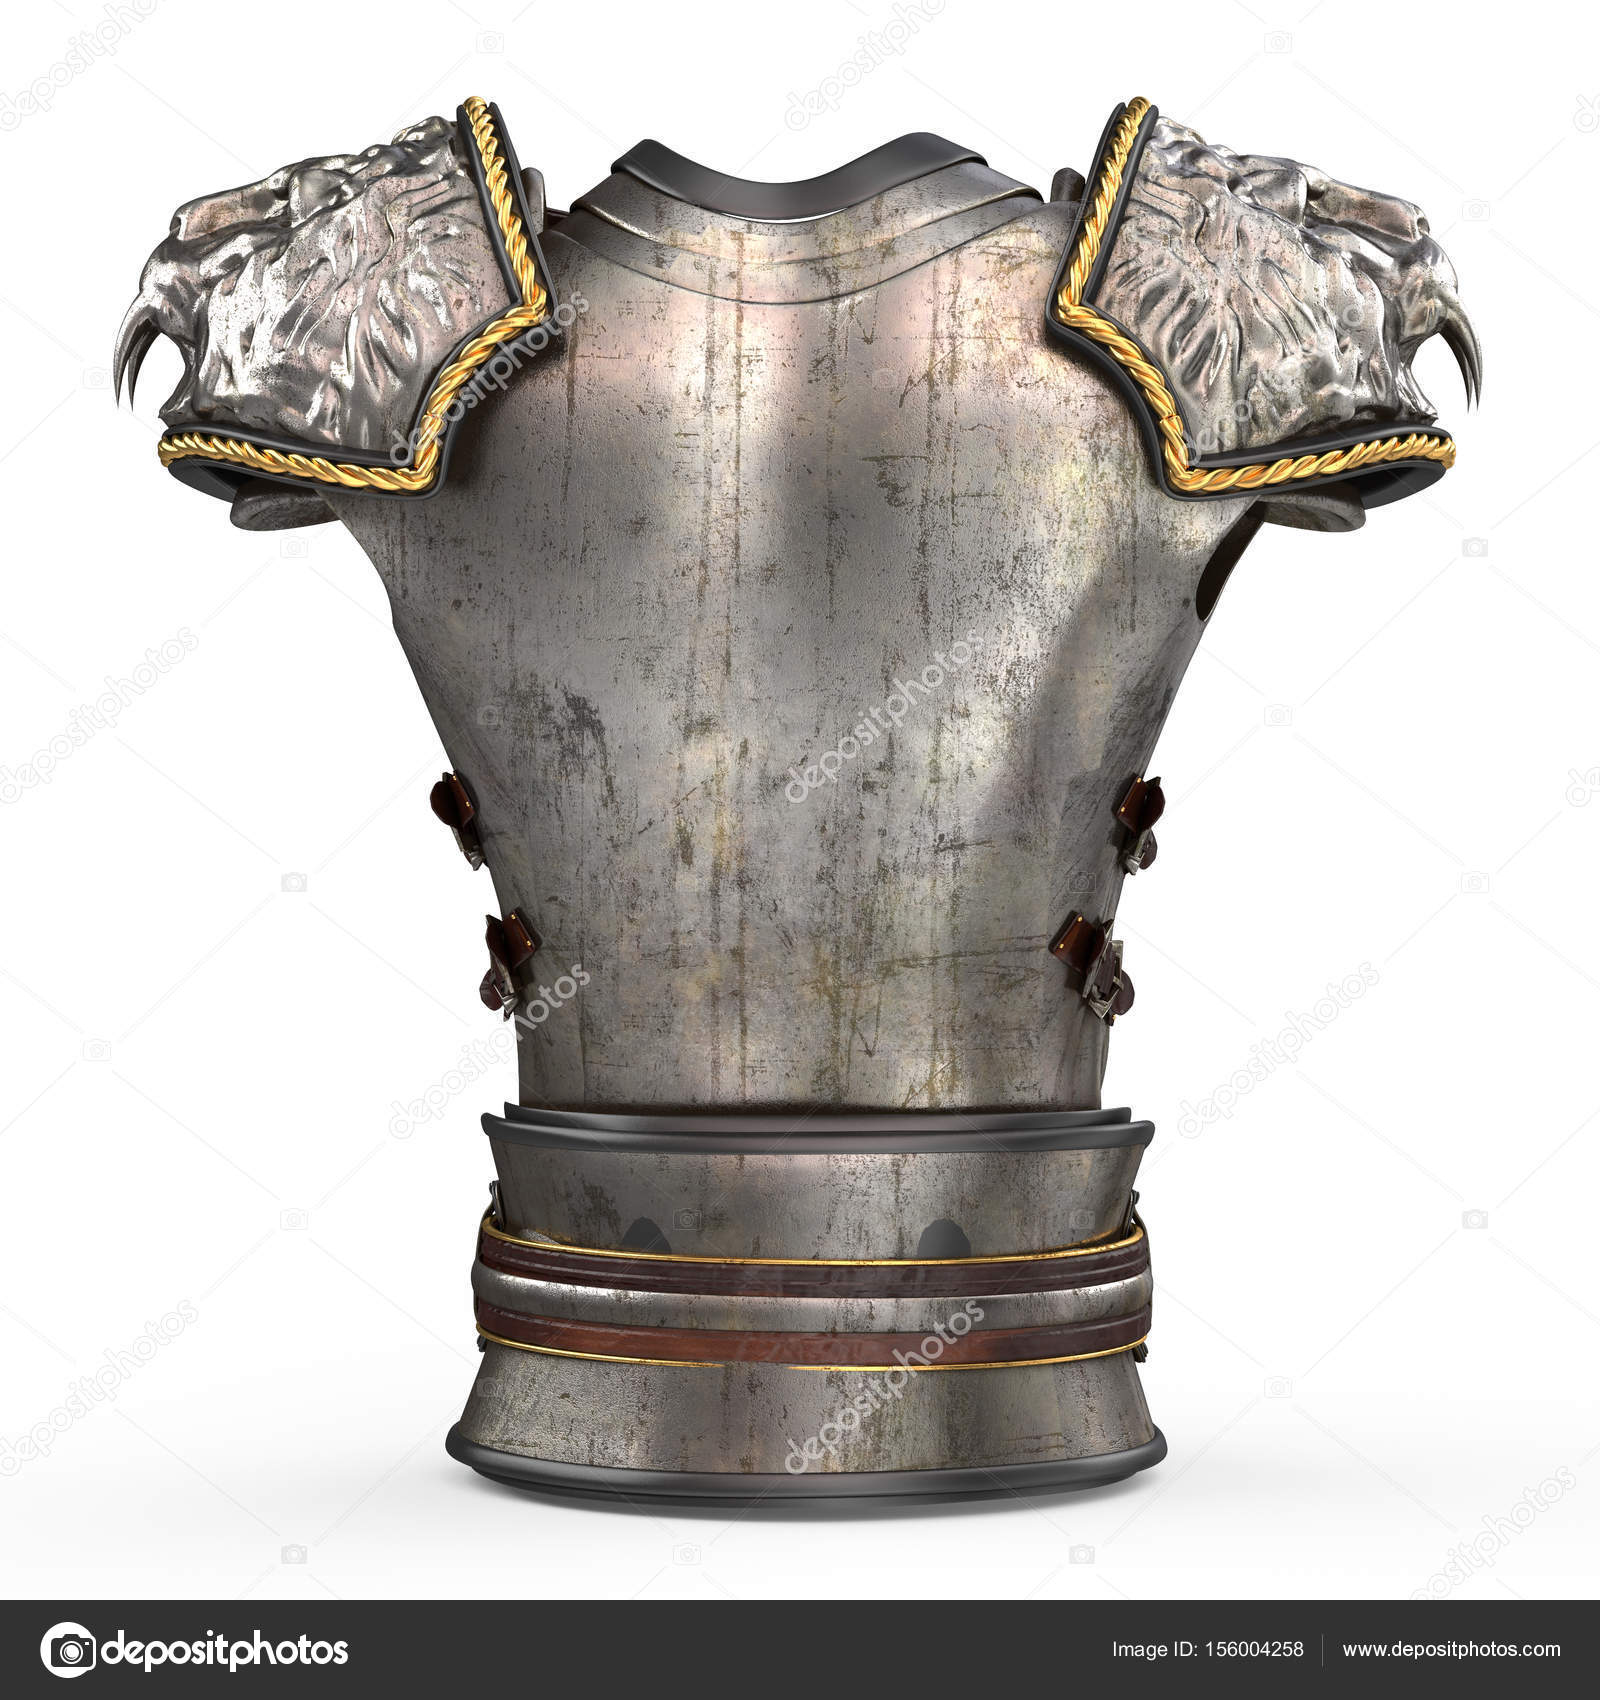 medieval plate armor shoulder